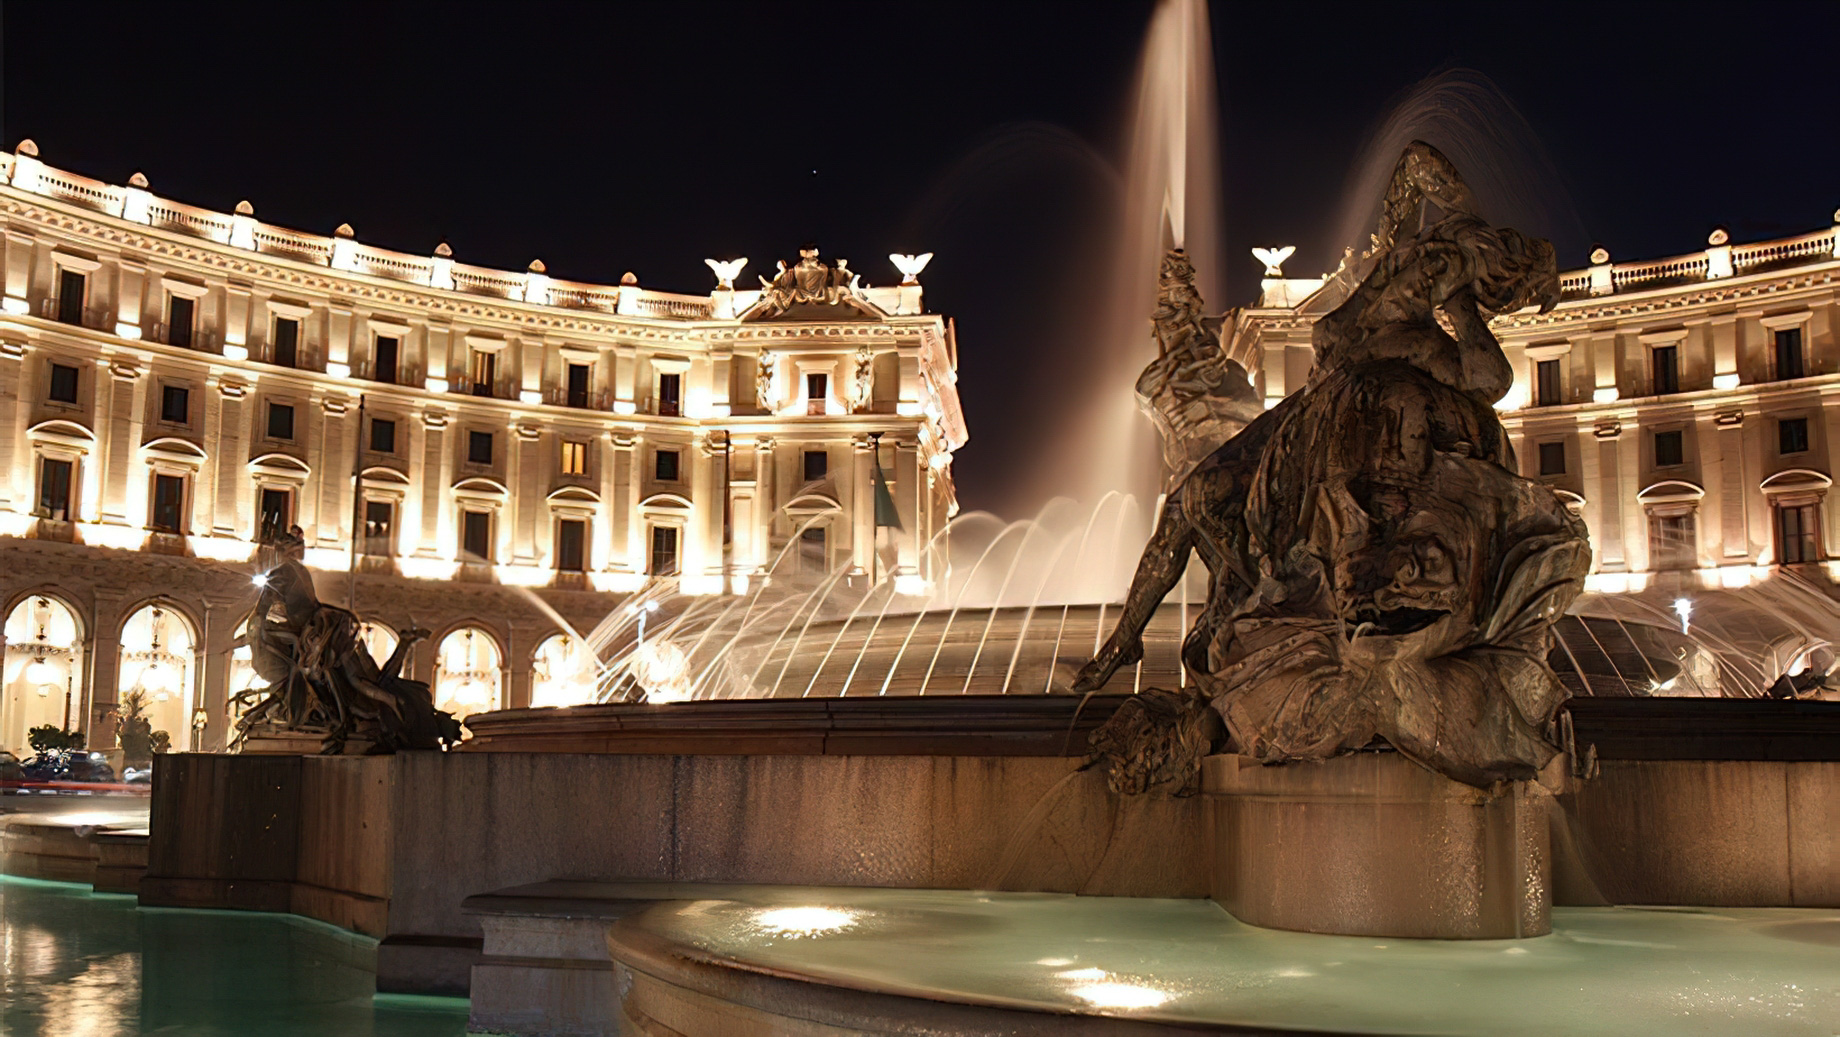 Anantara Palazzo Naiadi Rome Hotel – Rome, Italy – Exterior Fountain